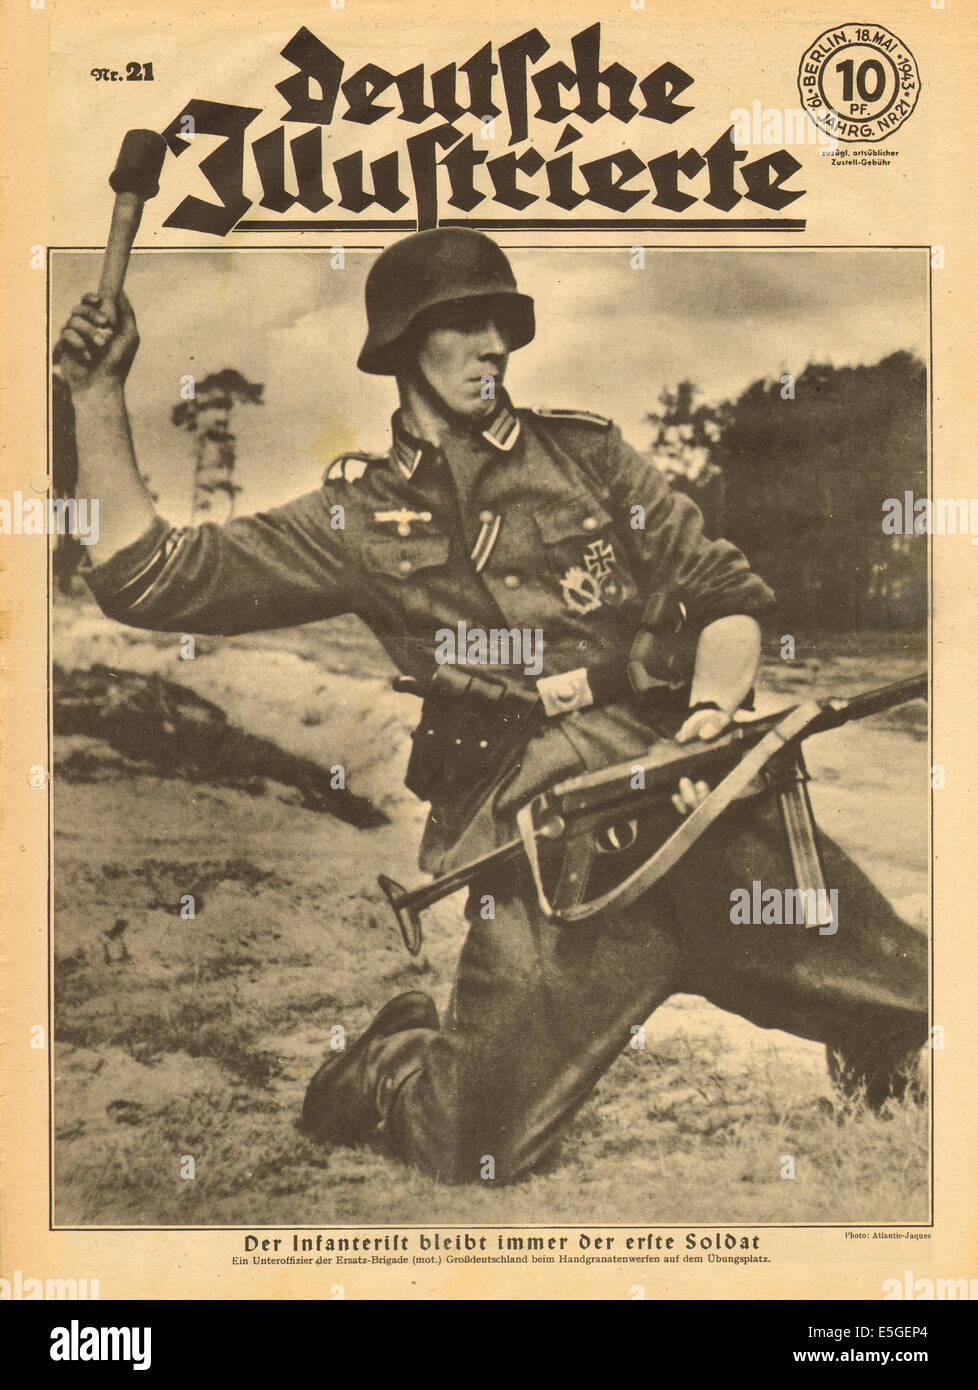 1943 Deutsche Illustrierte front page showing a Wehrmacht soldier in action Stock Photo